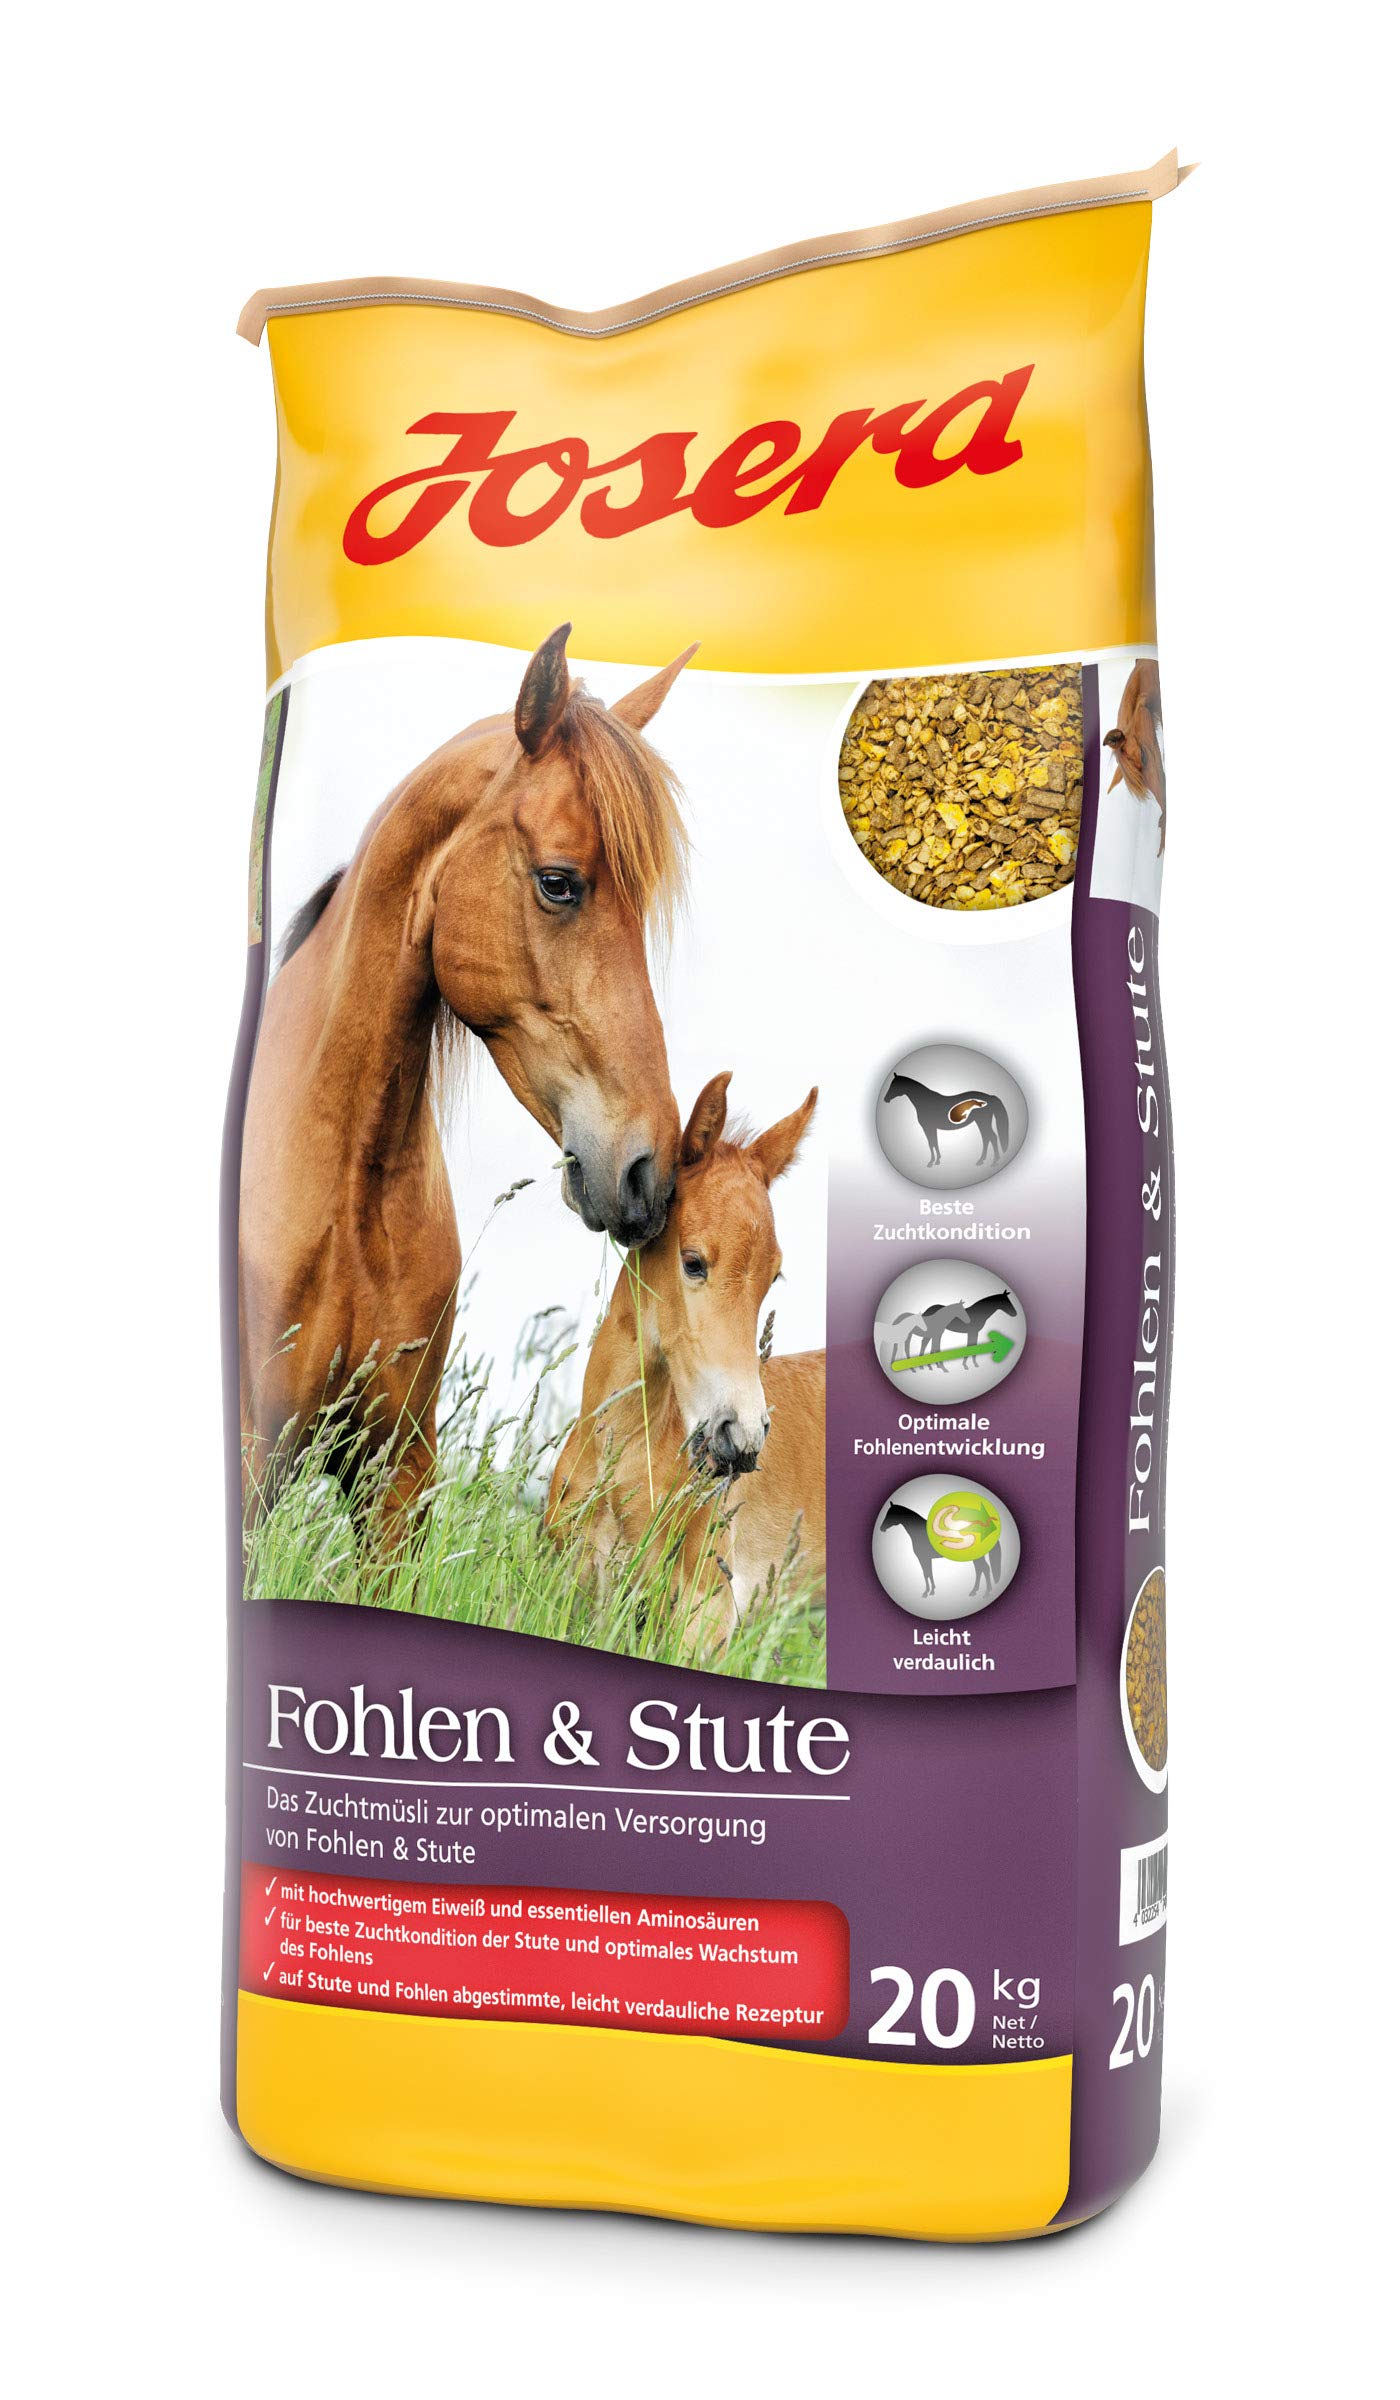 JOSERA Fohlen & Stute (1 x 20 kg) | Premium Pferdefutter für eine optimale Versorgung | haferfrei | energiereiches Müsli für Stuten und Fohlen | 1er Pack